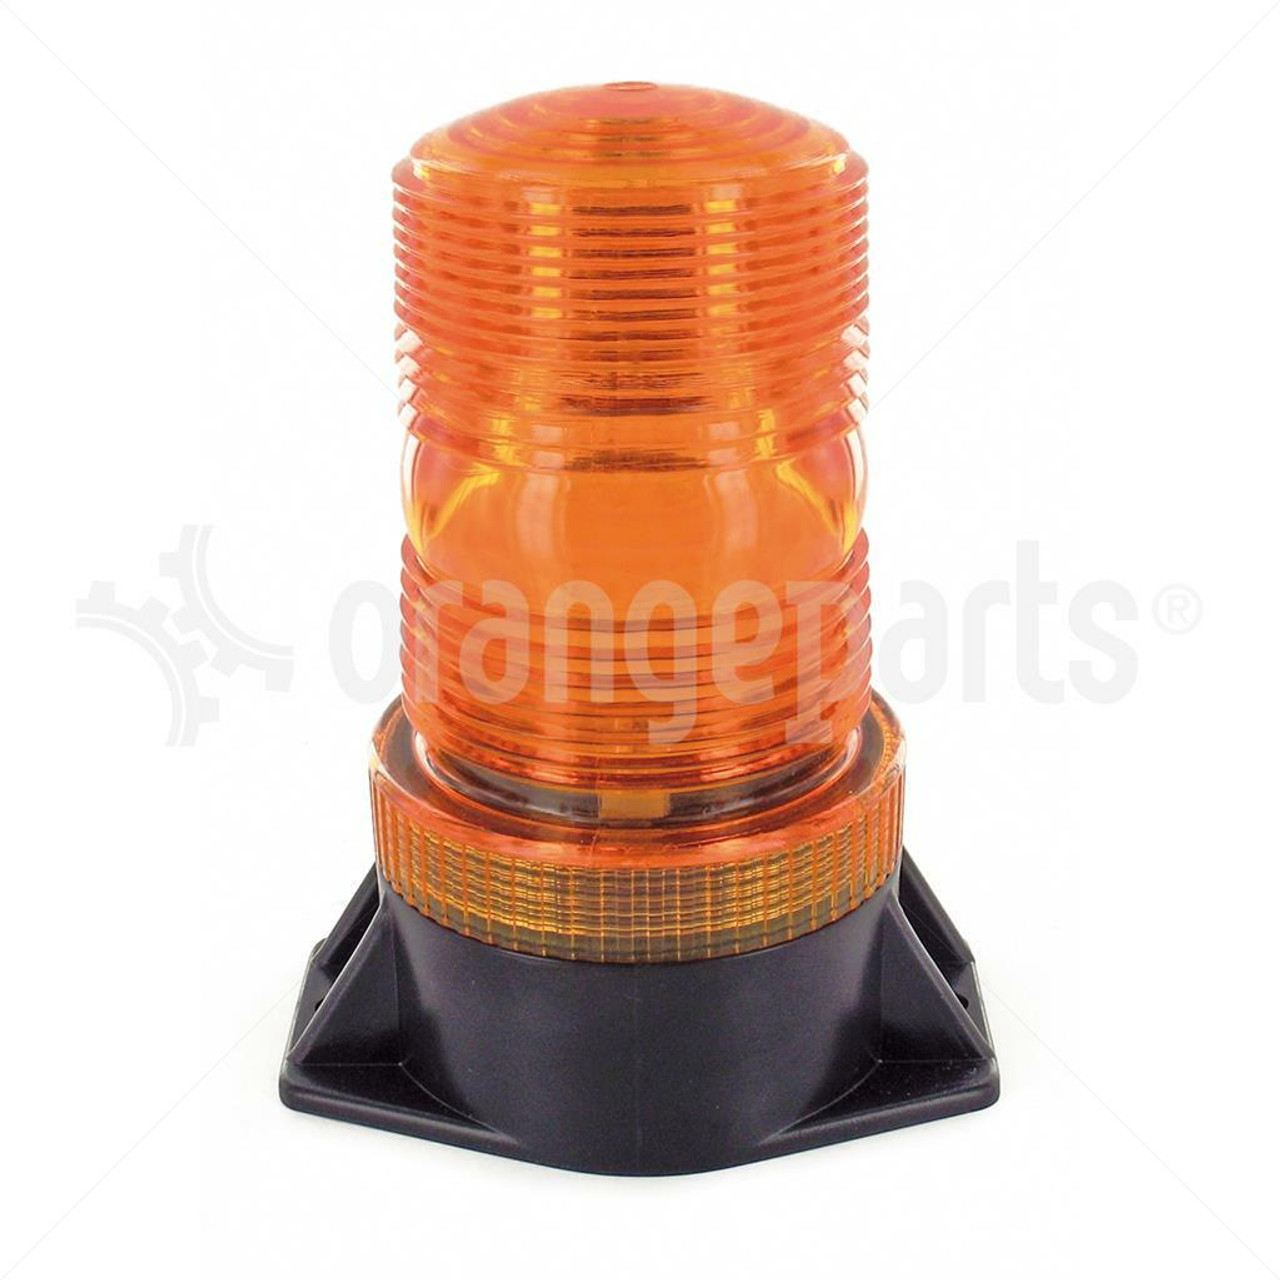 Strobe LED puissant pour pare-soleil (orange blanc bleu) - Interled